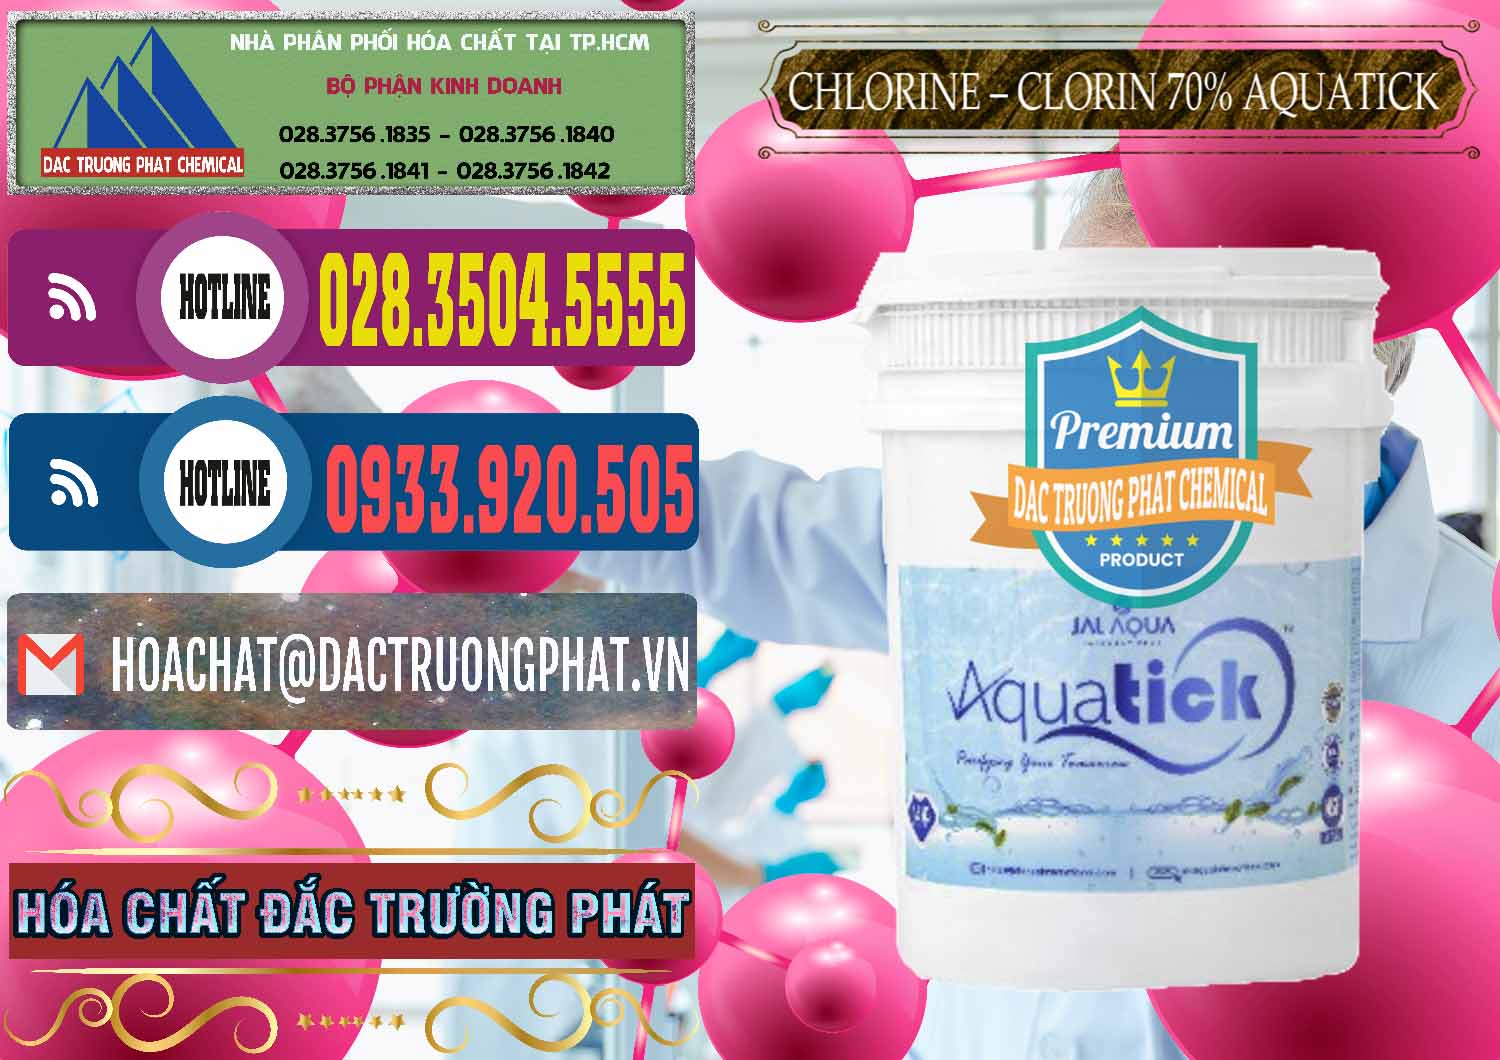 Công ty cung cấp và bán Chlorine – Clorin 70% Aquatick Thùng Cao Jal Aqua Ấn Độ India - 0237 - Đơn vị nhập khẩu ( phân phối ) hóa chất tại TP.HCM - muabanhoachat.com.vn